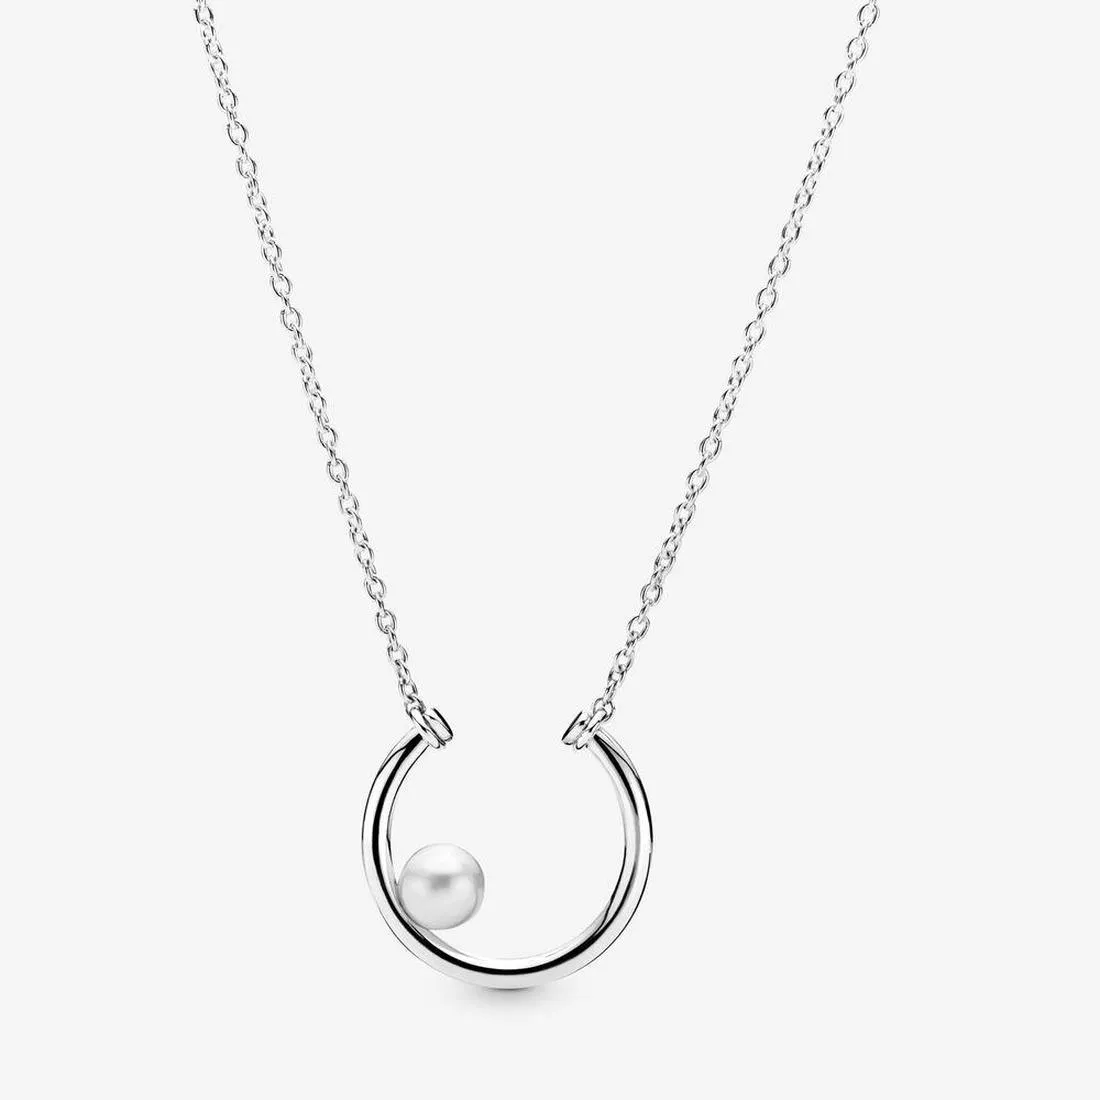 Gioielli firmati Collana in argento 925 Ciondolo a forma di cuore Pandora Offset Perle coltivate d'acqua dolce Cerchio d'amore Collane Charms stile europeo Perle di Murano